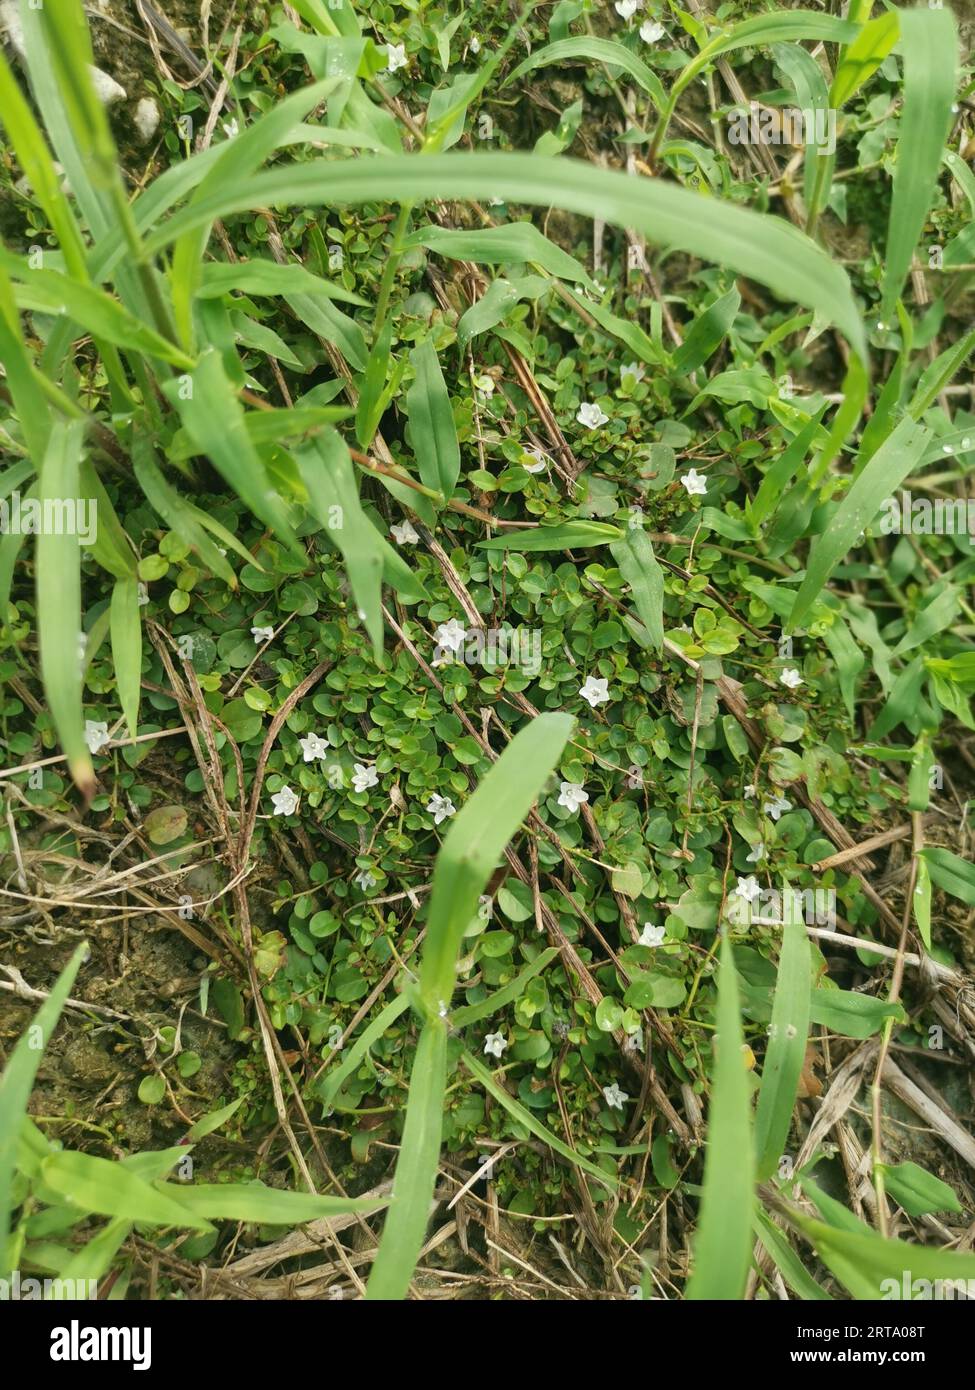 Evolvulus nummularius weed on the wild field Stock Photo